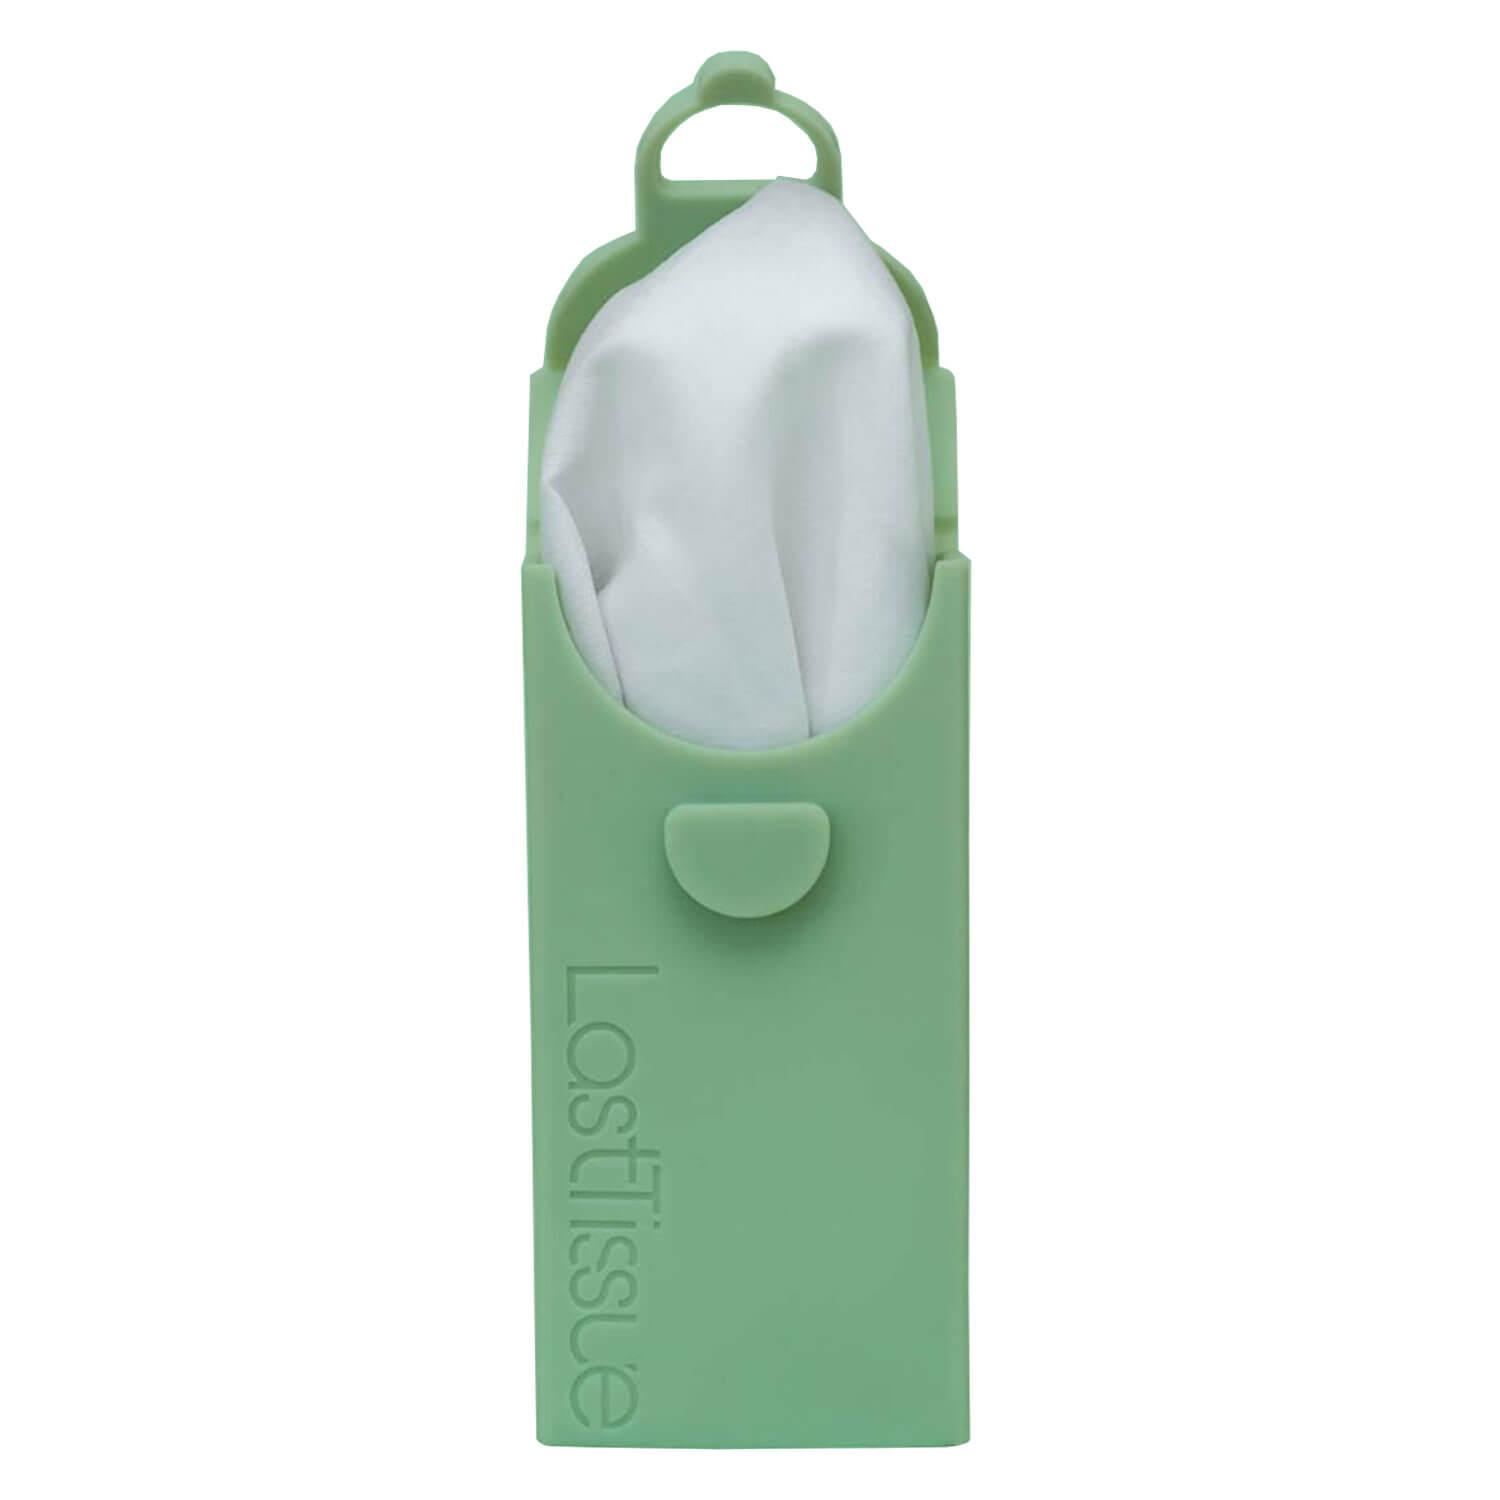 LastTissue - Reusable Tissue Pack Green